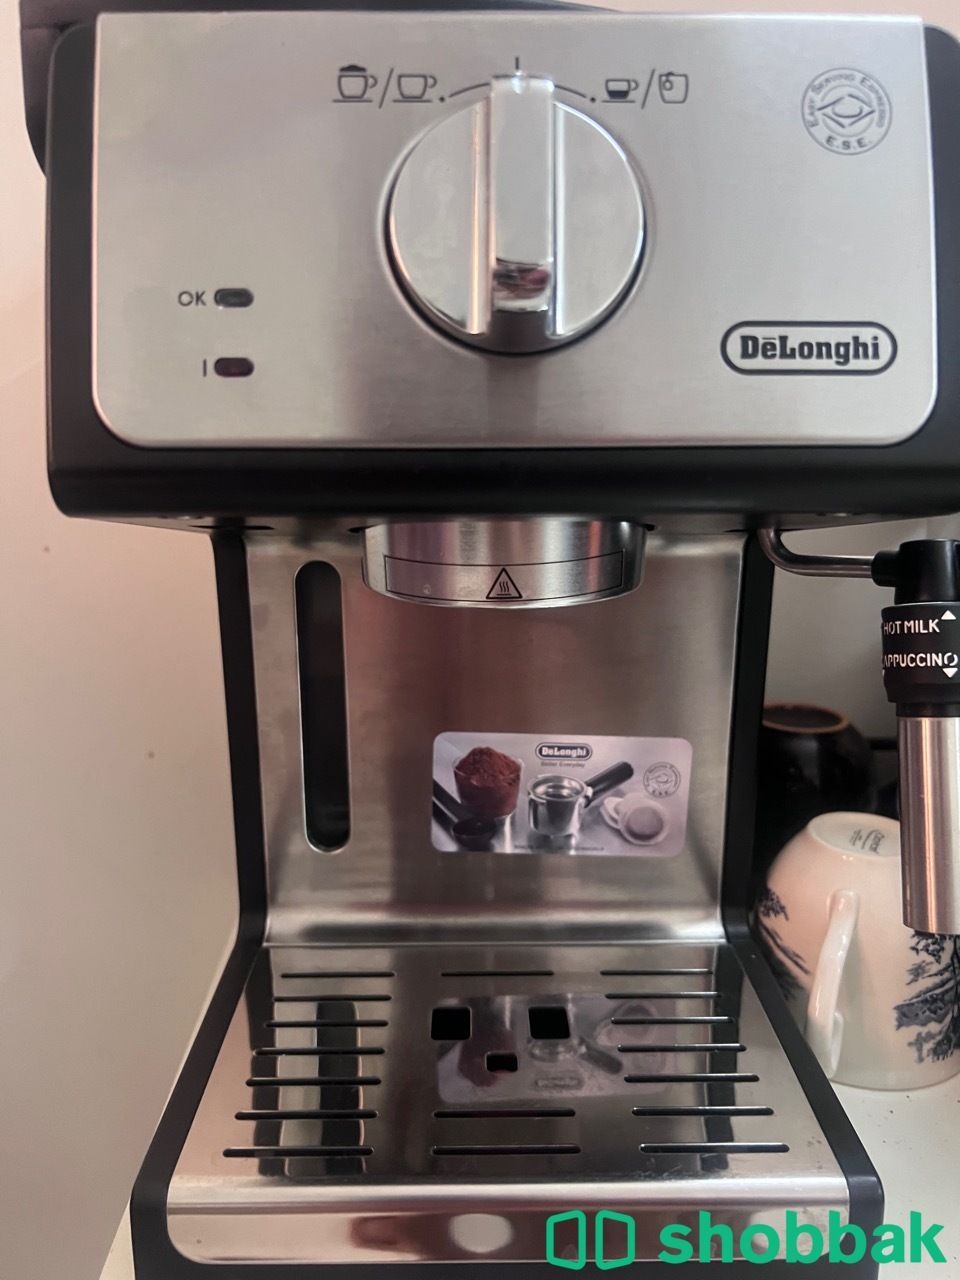 ماكينة قهوة ديلونجي مع مطحنة اديسون بحاله ممتازة جدا  Shobbak Saudi Arabia